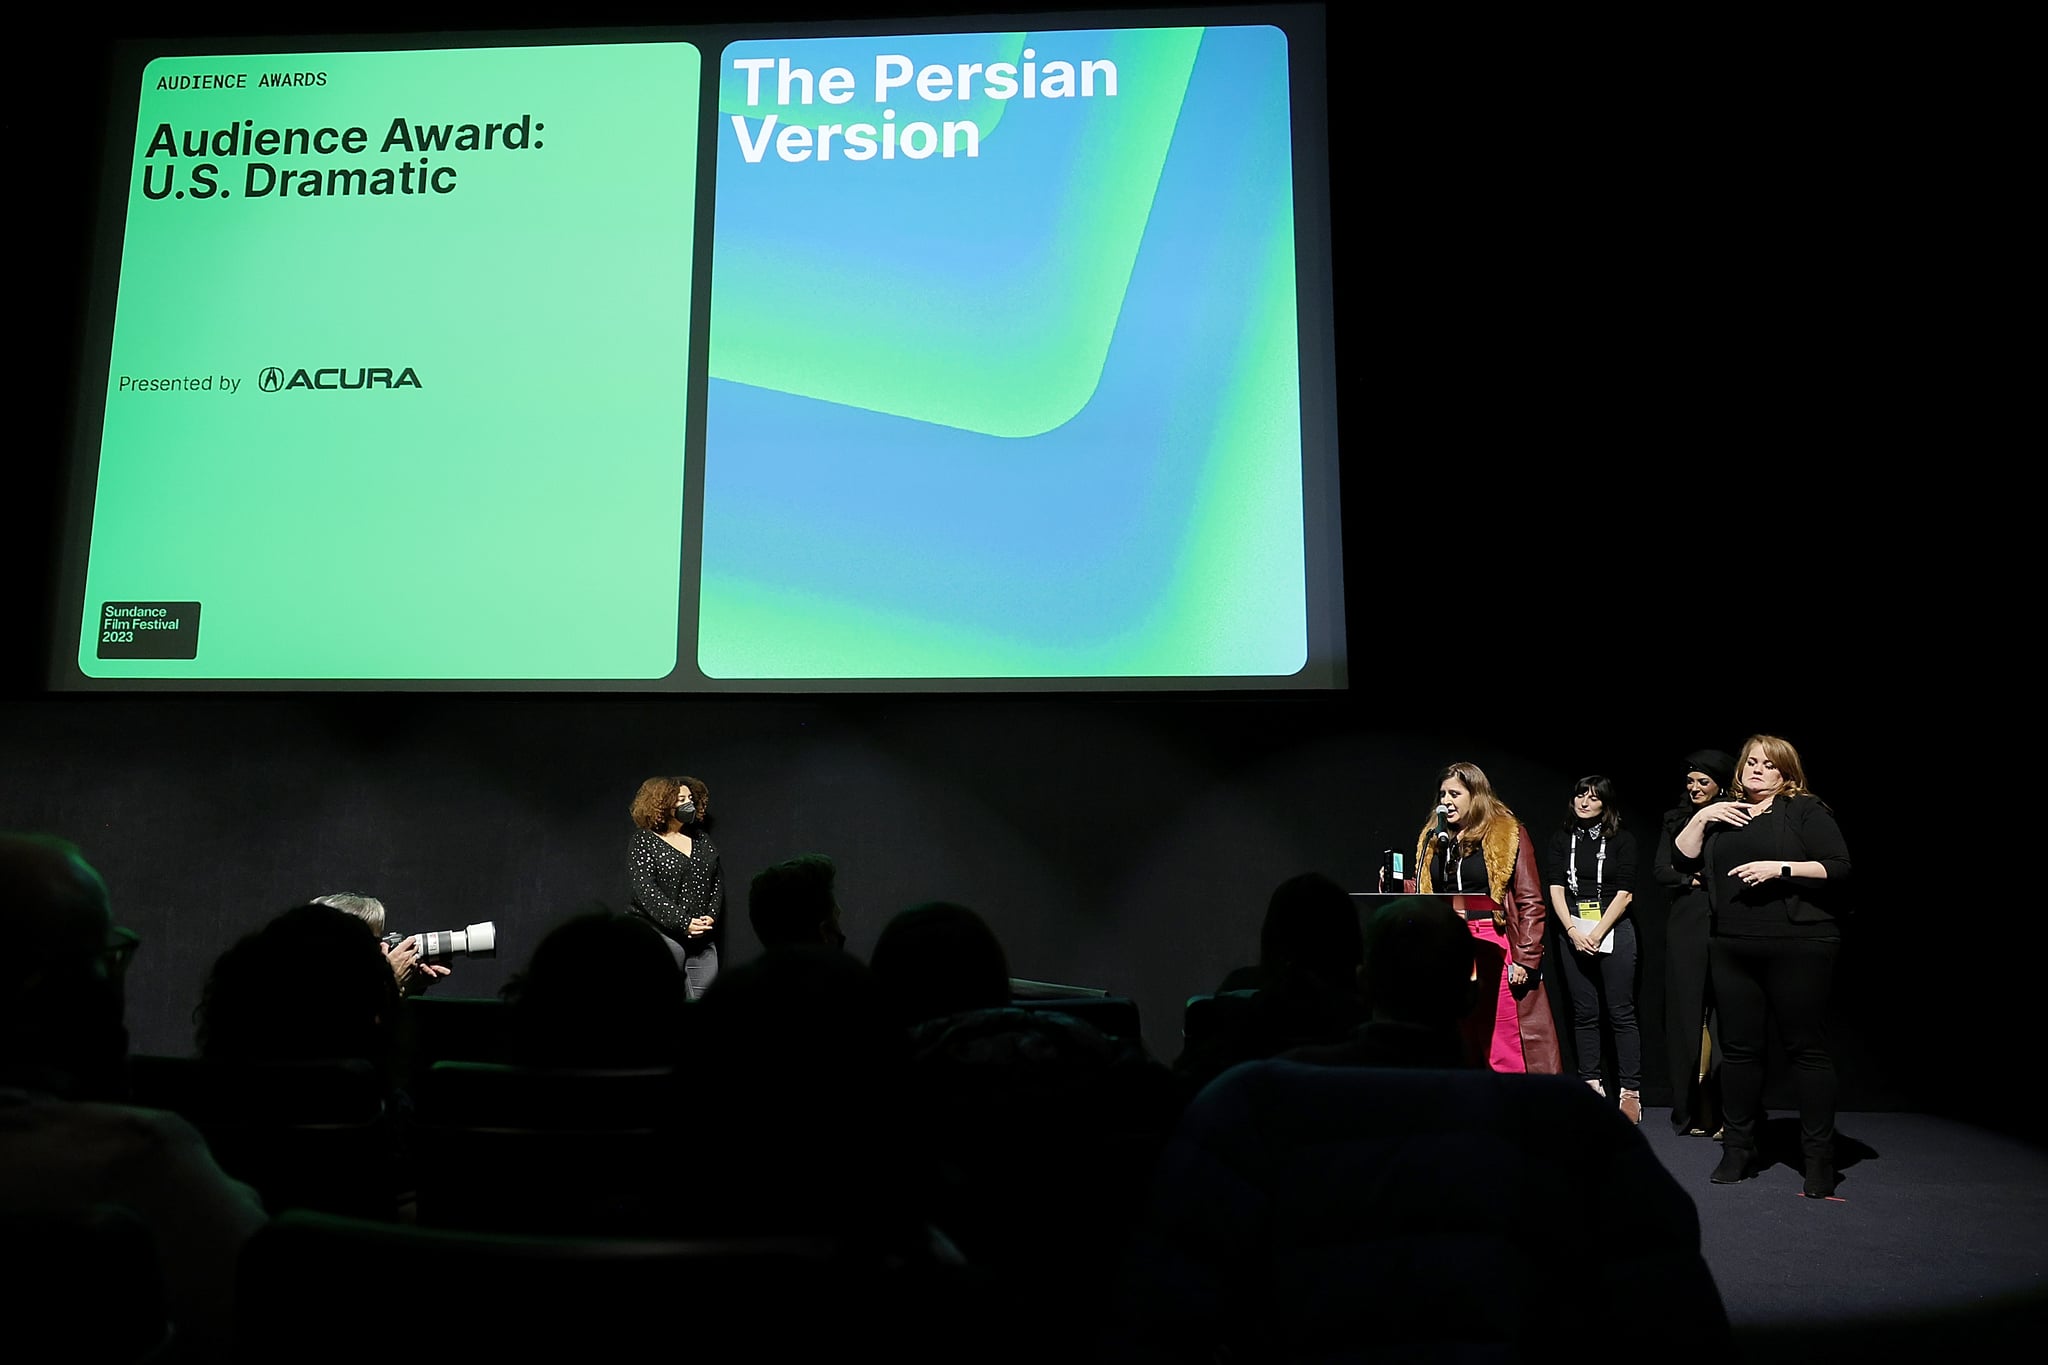 犹他州帕克城——1月27日:2023年1月27日，在犹他州帕克城的雷剧院举行的圣丹斯电影节颁奖典礼上，Maryam Keshavarz因《波斯版》获得美国观众奖。(图片来源:Michael Loccisano/Getty Images)